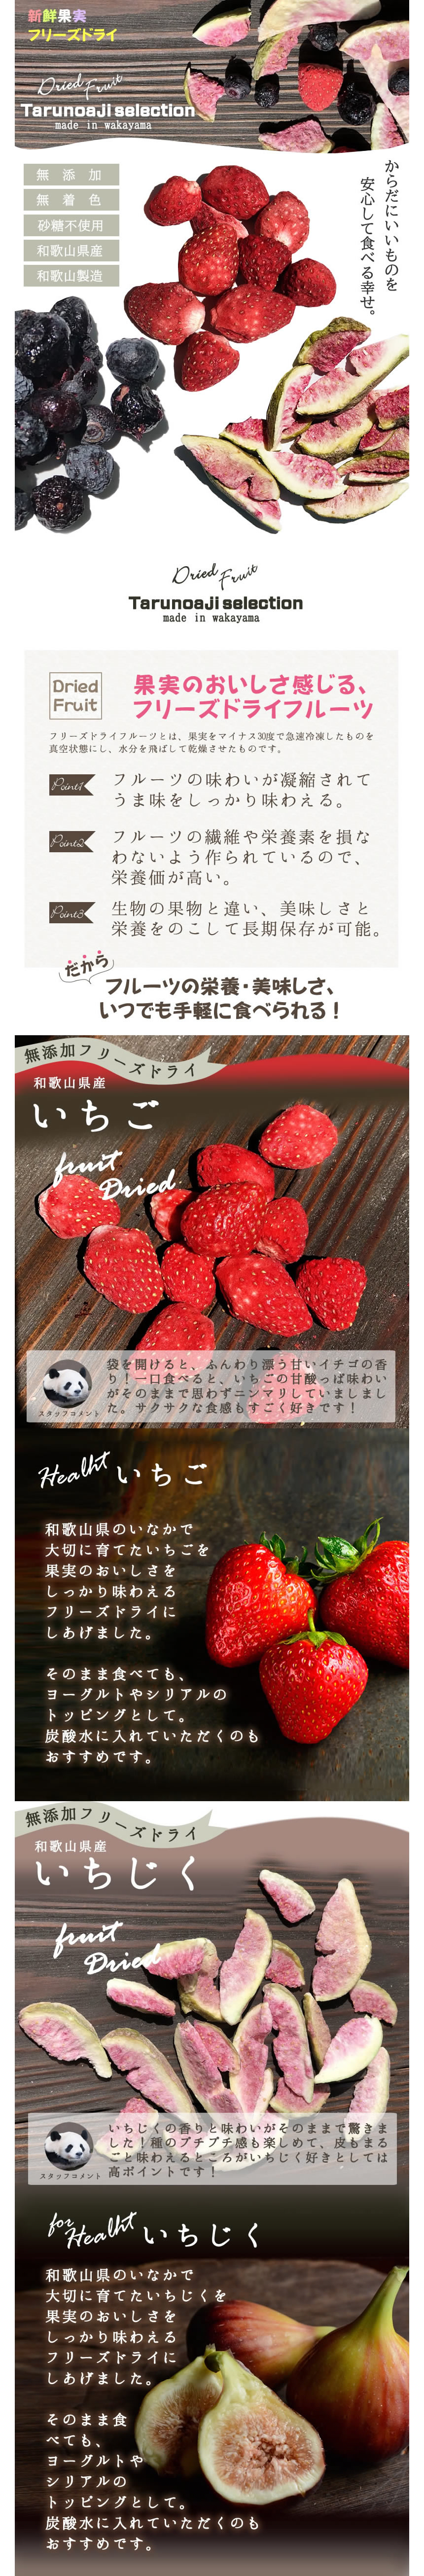 日本初の ドライフルーツ 砂糖不使用 無添加 国産 フリーズドライ いちご 30g 和歌山県産 イチゴ 使用 グラノーラ シリアル ヨーグルト  ドライイチゴ ミックス トッピング お菓子作り 腸活